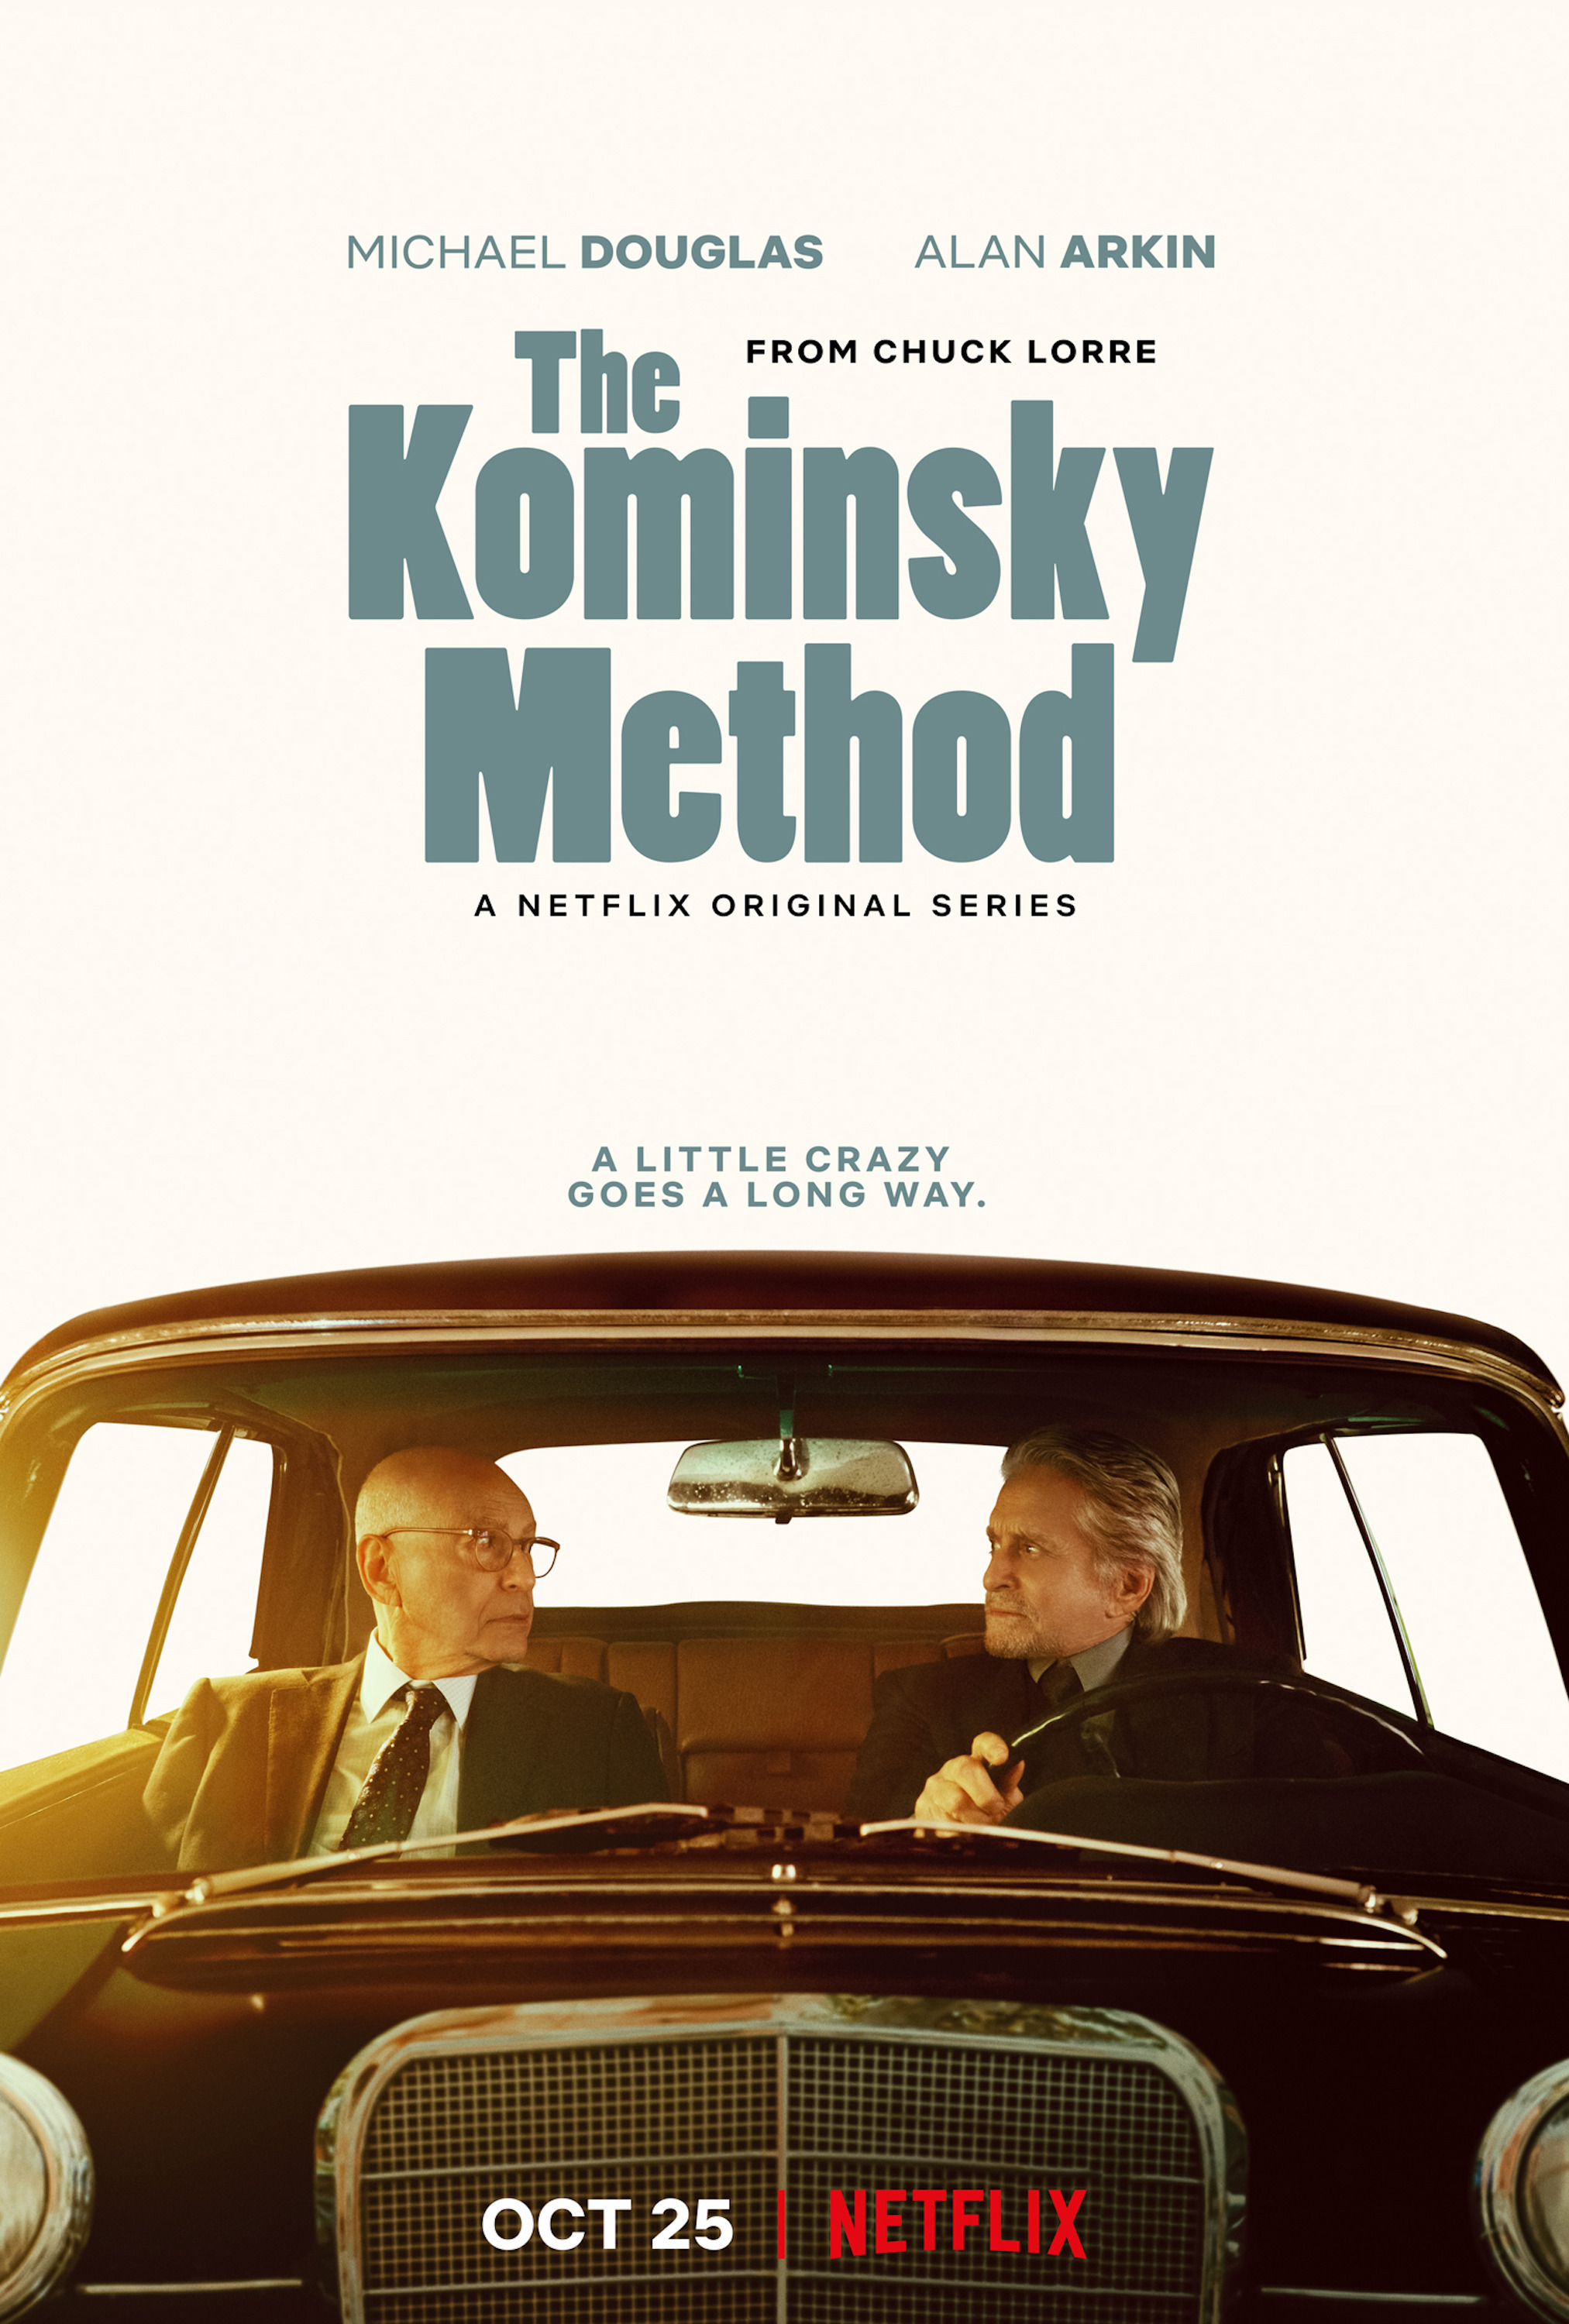 Mega Sized TV Poster Image for The Kominsky Method (#2 of 3)